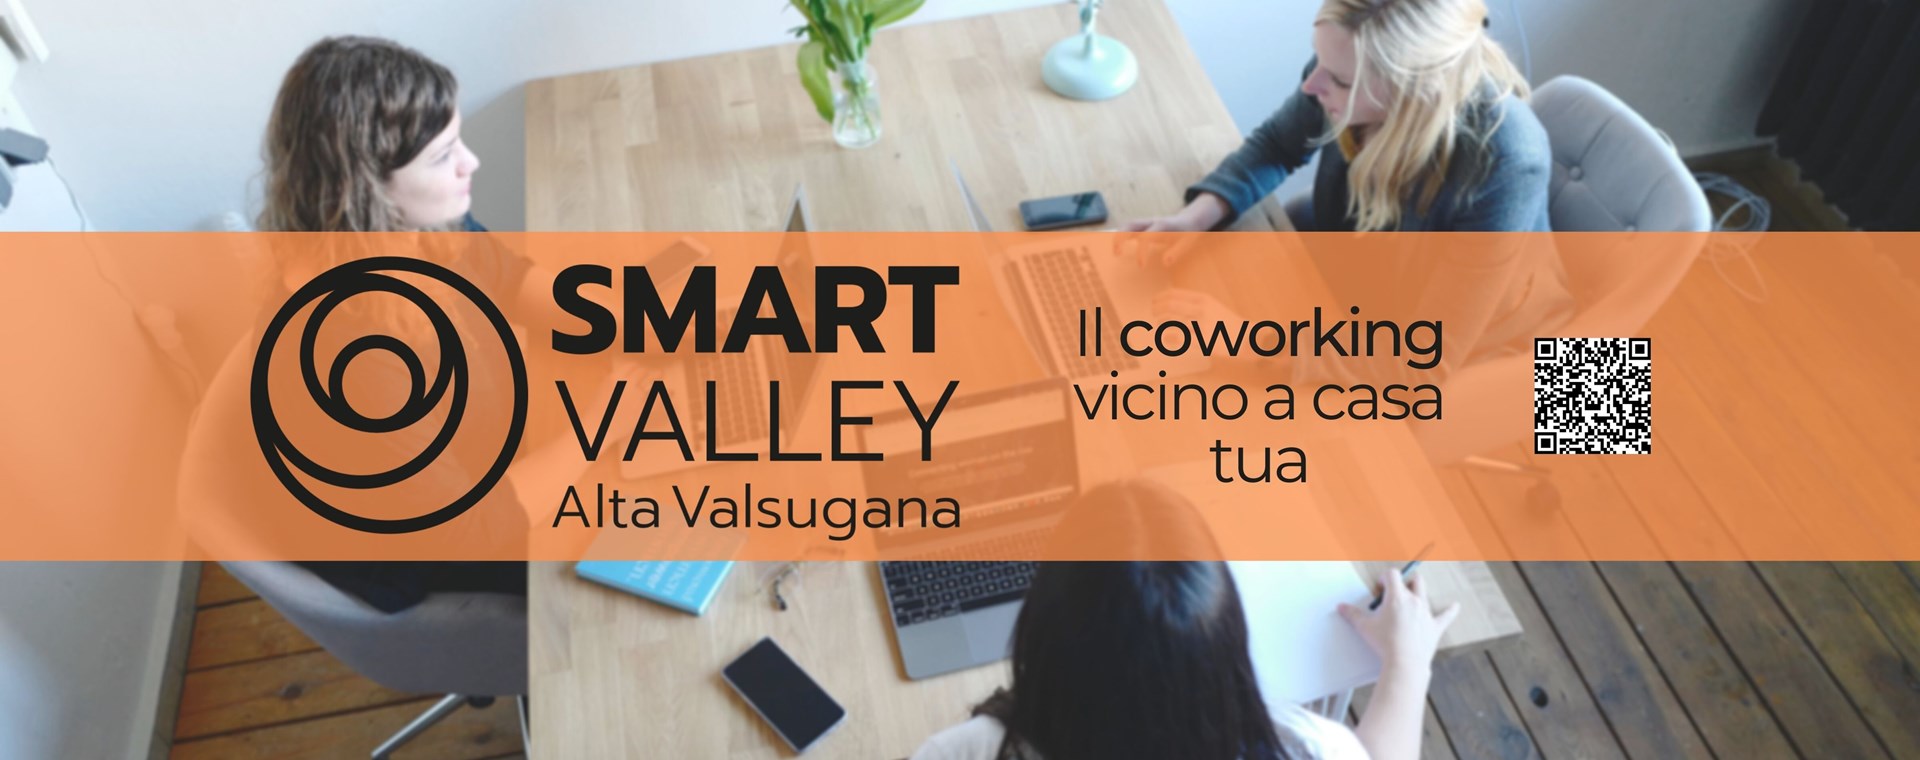 Alta Valsugana Smart Valley: il Coworking vicino a casa! 